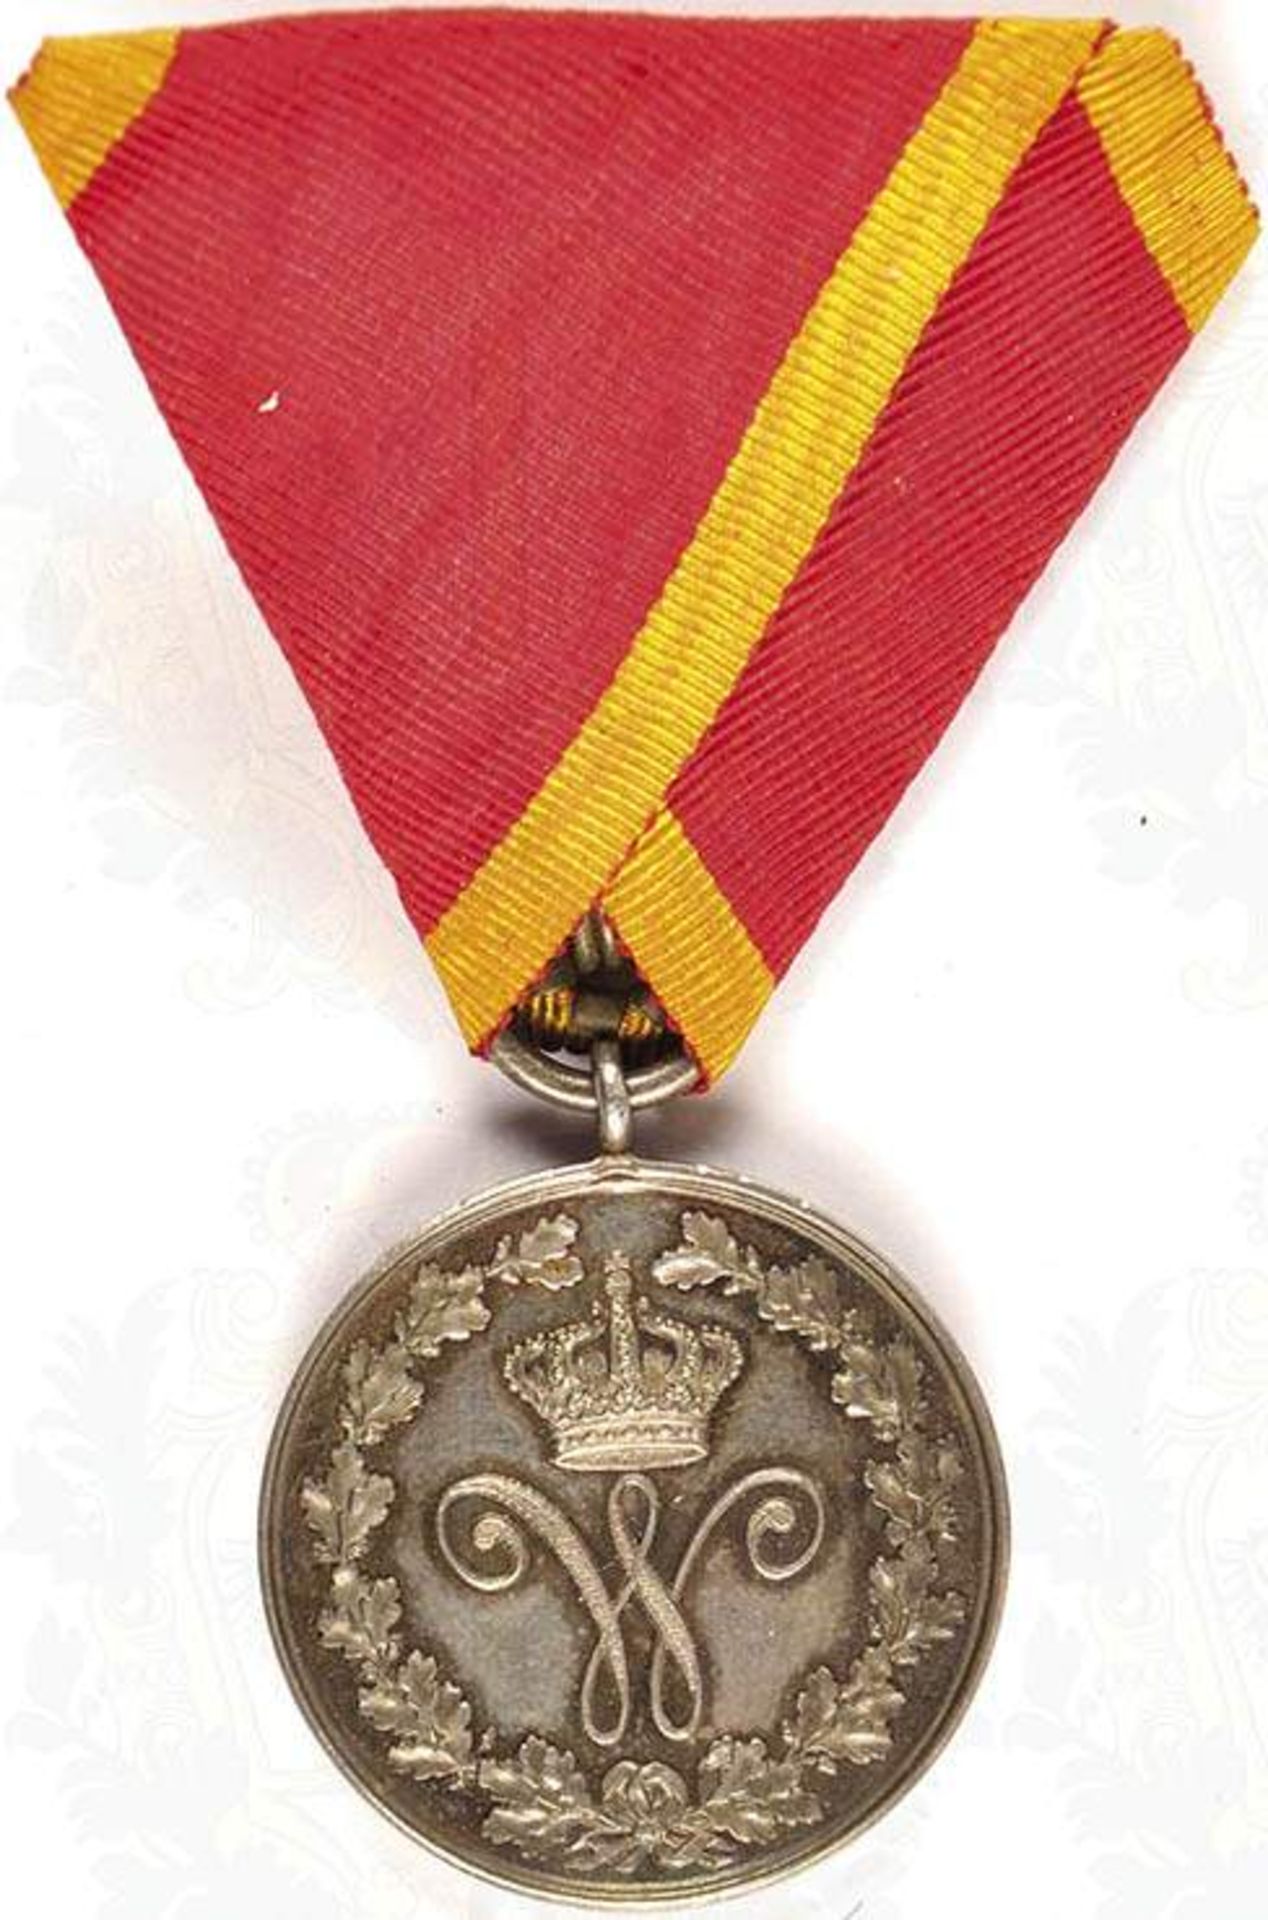 EHRENZEICHEN "IMMOTA FIDES" 1. KLASSE 1903-1918, Silber, Medaille, am Dreiecksband, OEK 604 <